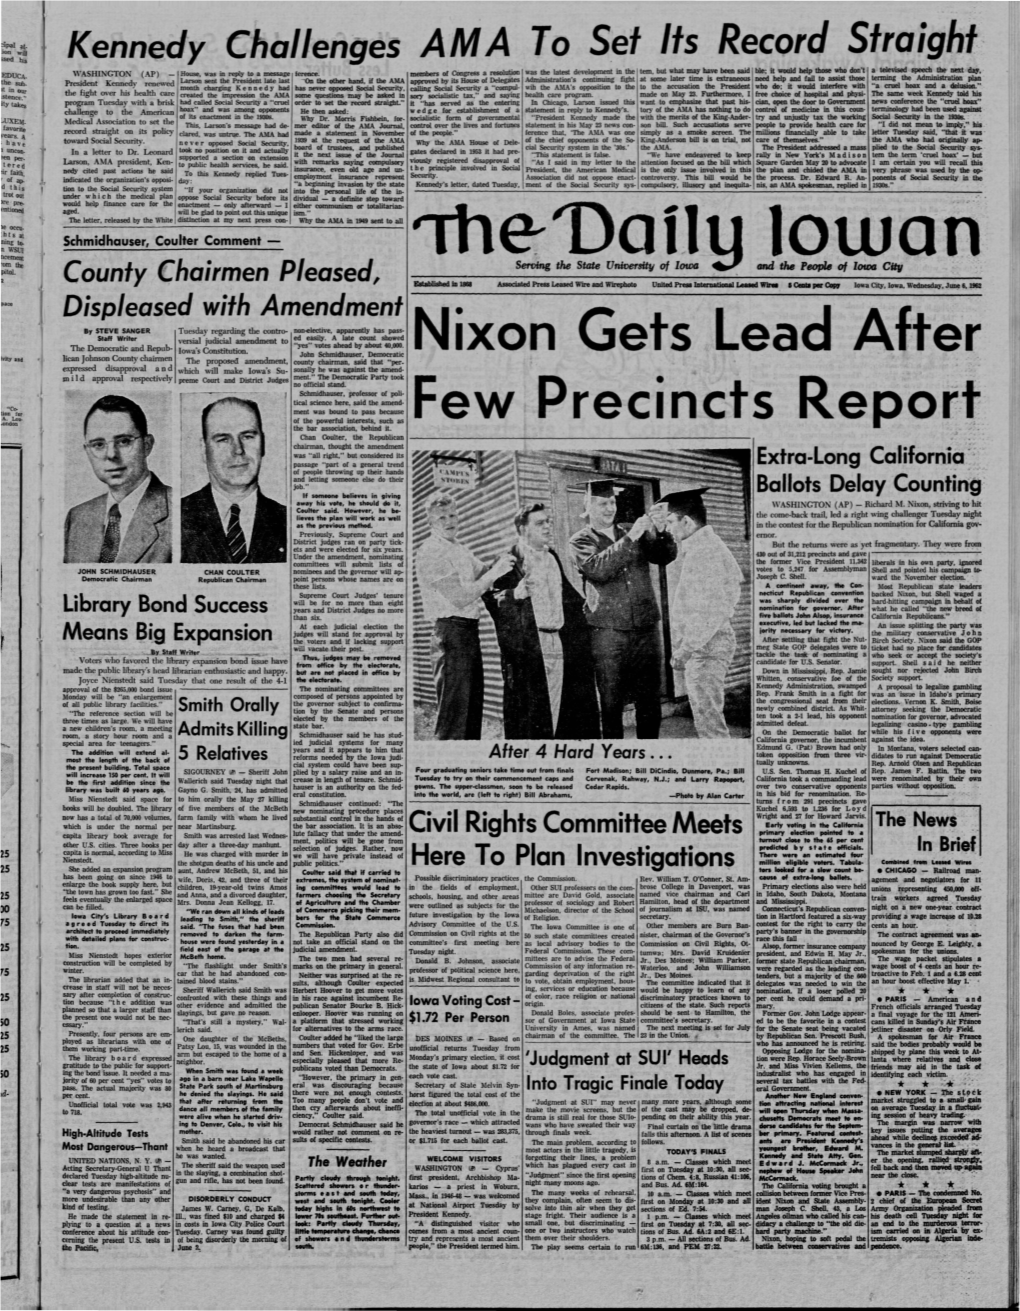 Daily Iowan (Iowa City, Iowa), 1962-06-06